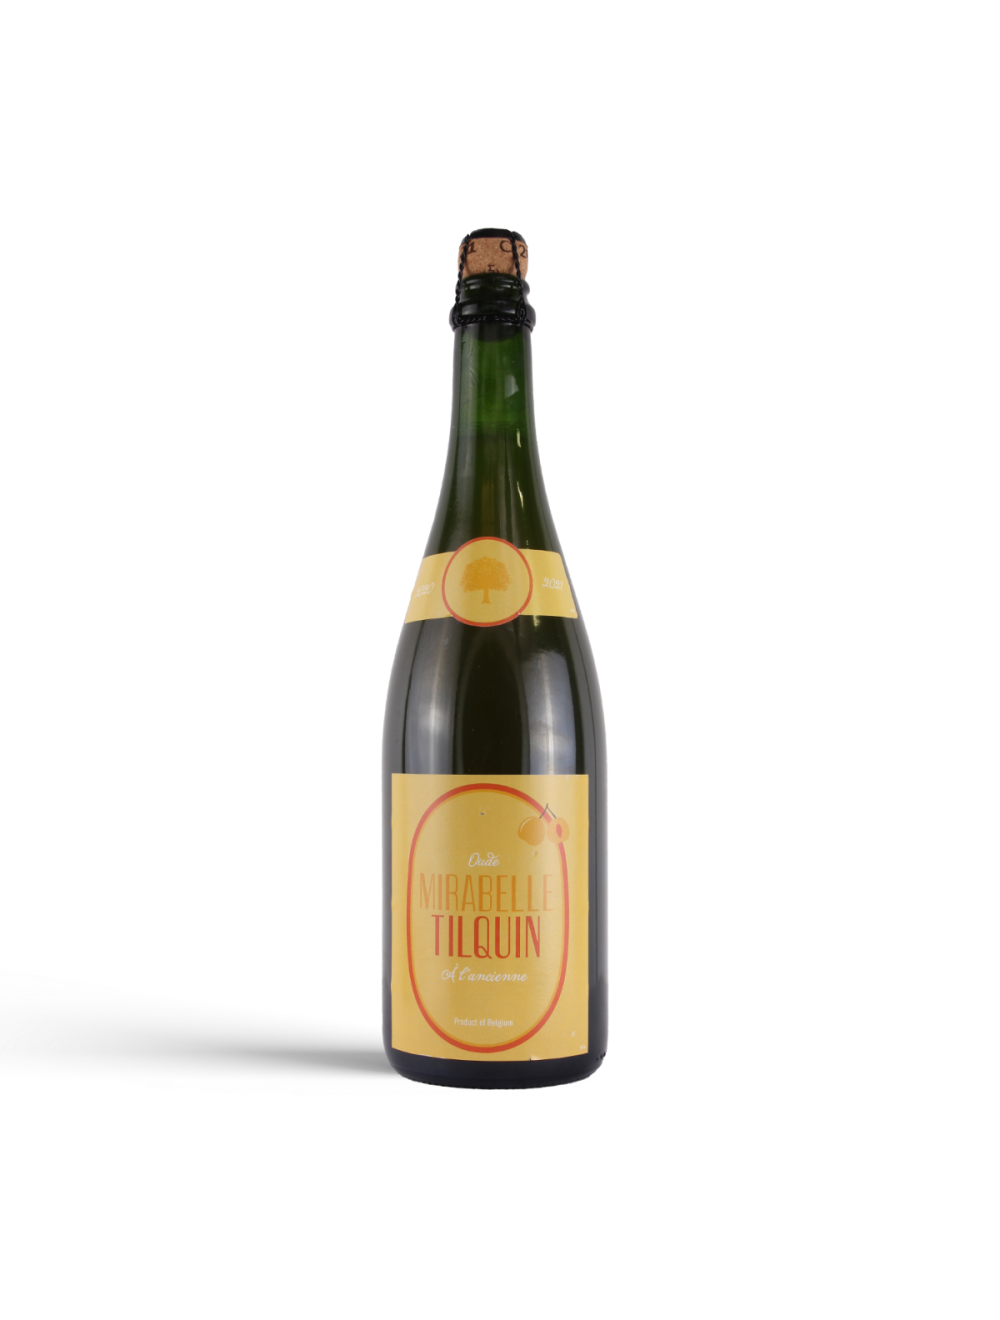 Mirabelle Tilquin à l’ancienne - Gueuzerie Tilquin - Plum Lambic, 7%, 750ml Sharing Bottle